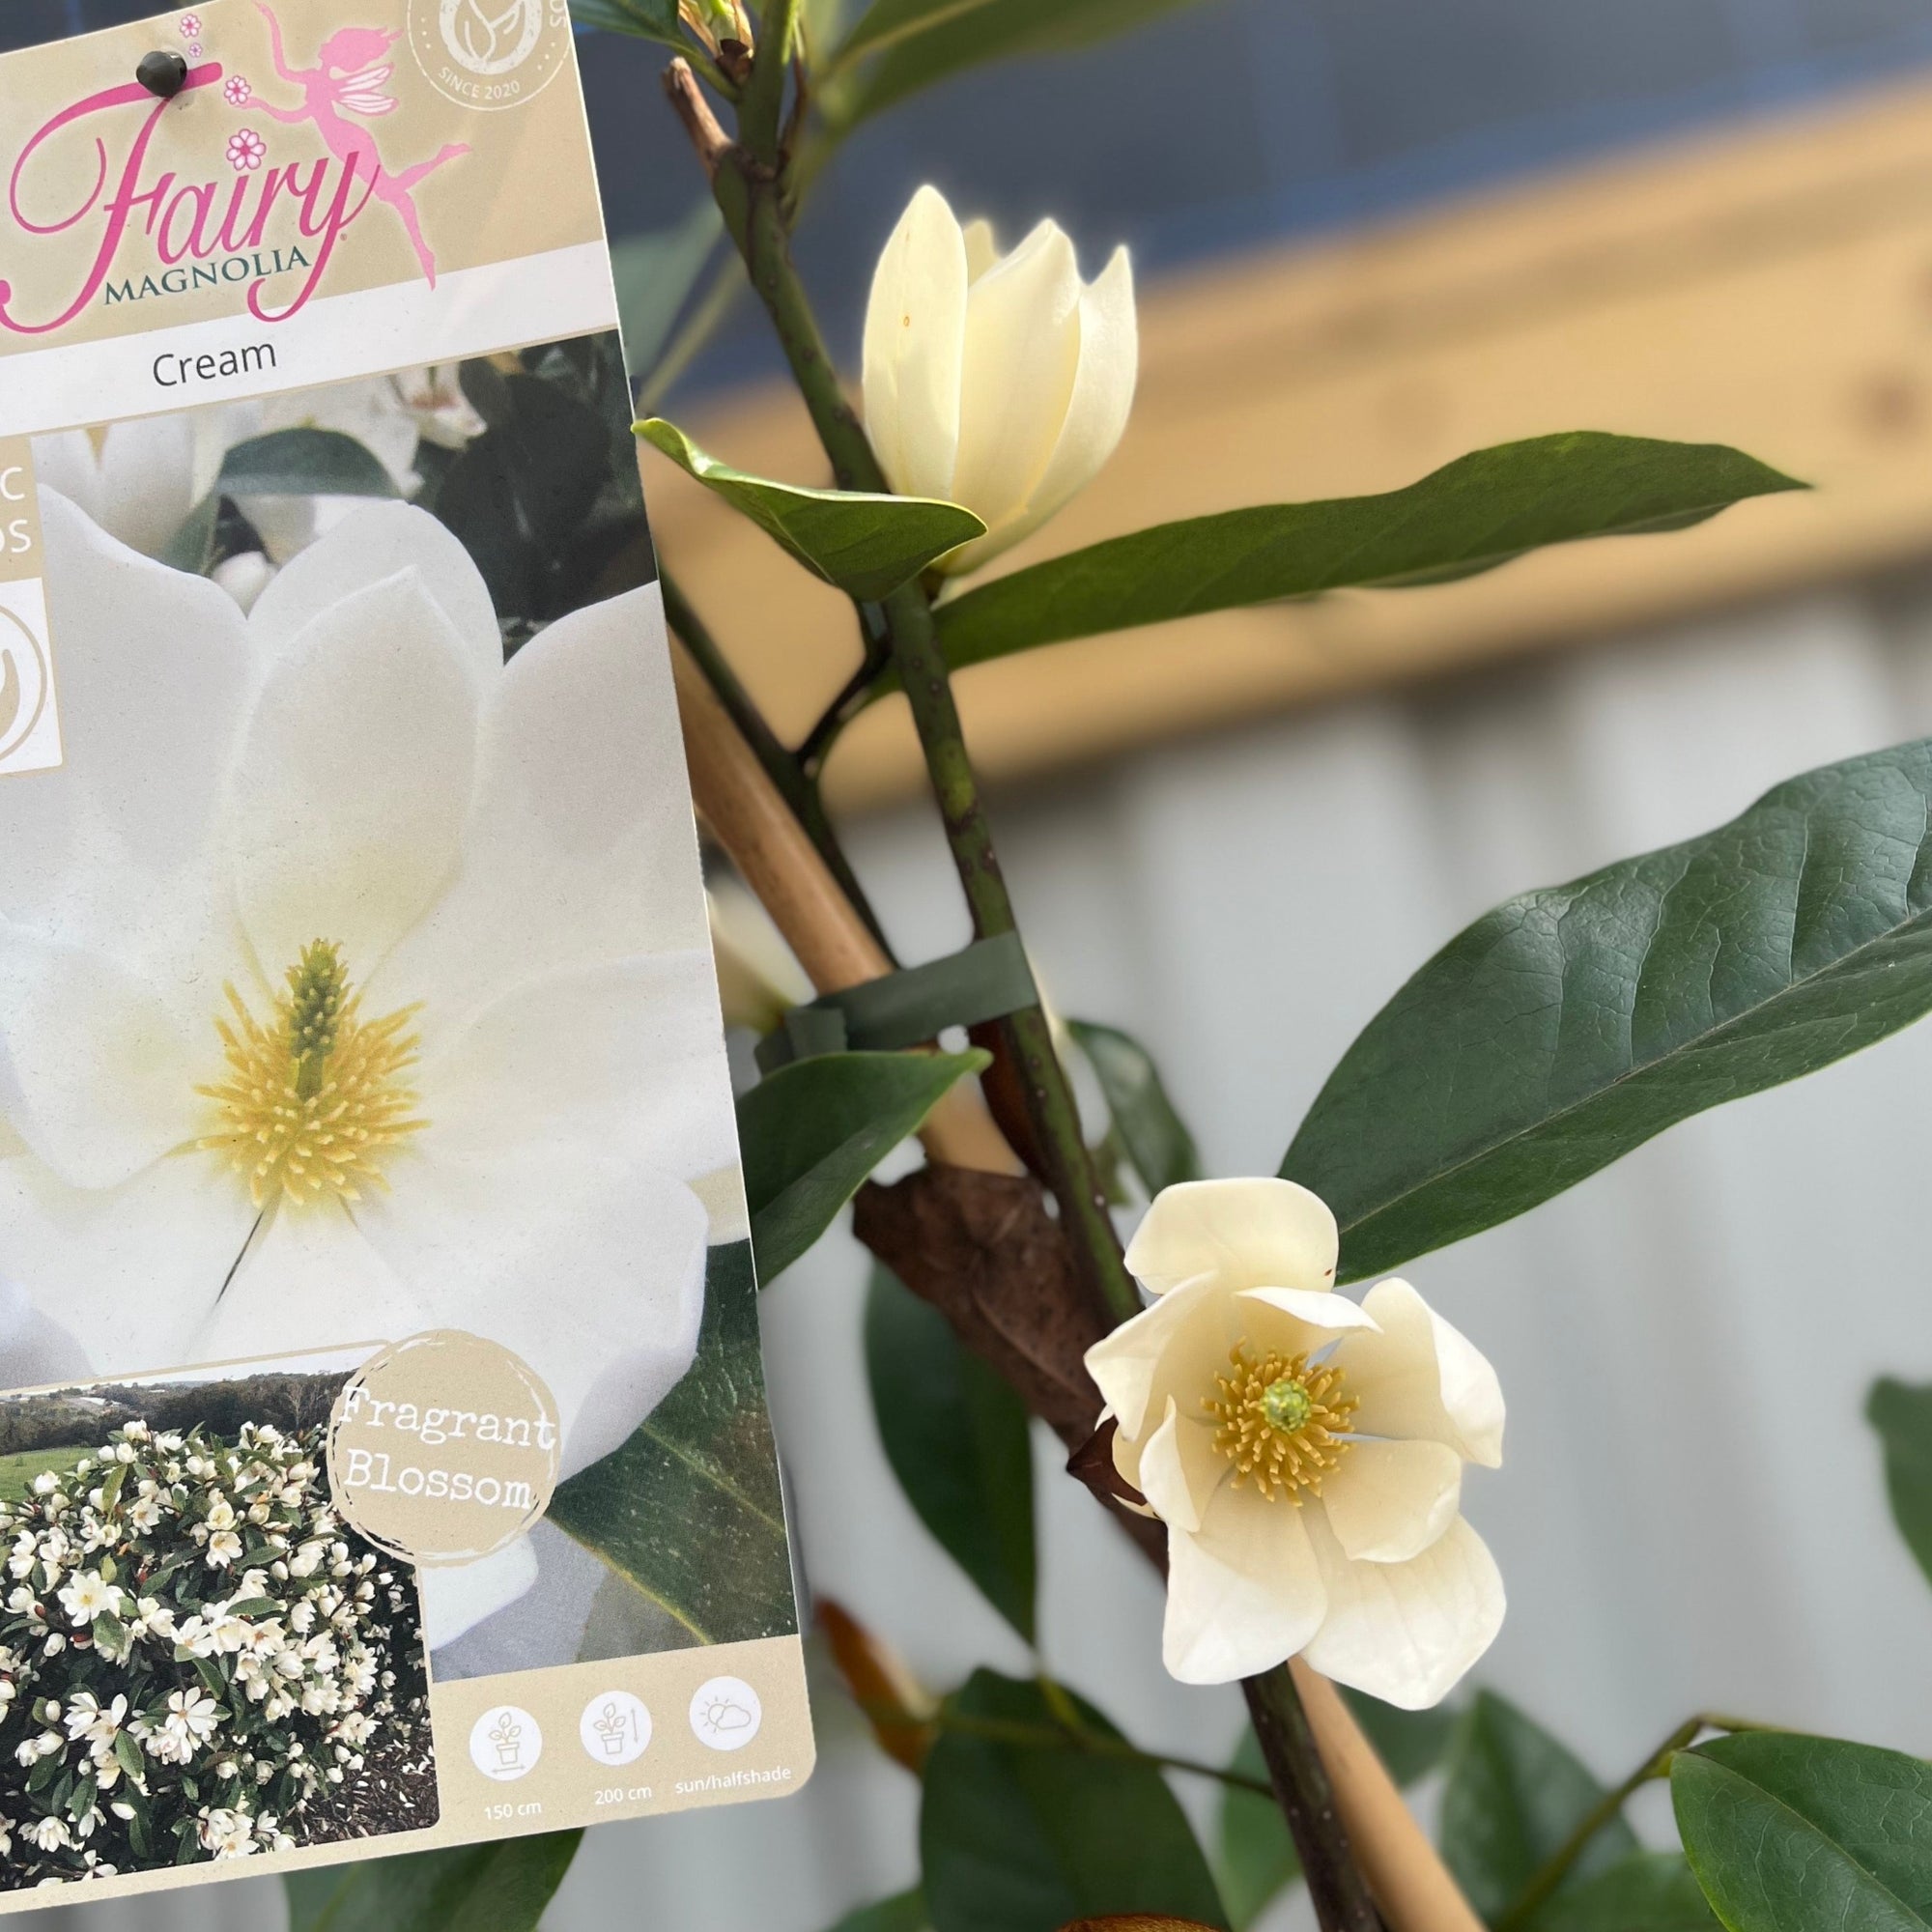 Evergreen Magnolia | Fairy Magnolia Cream | 60-70cm